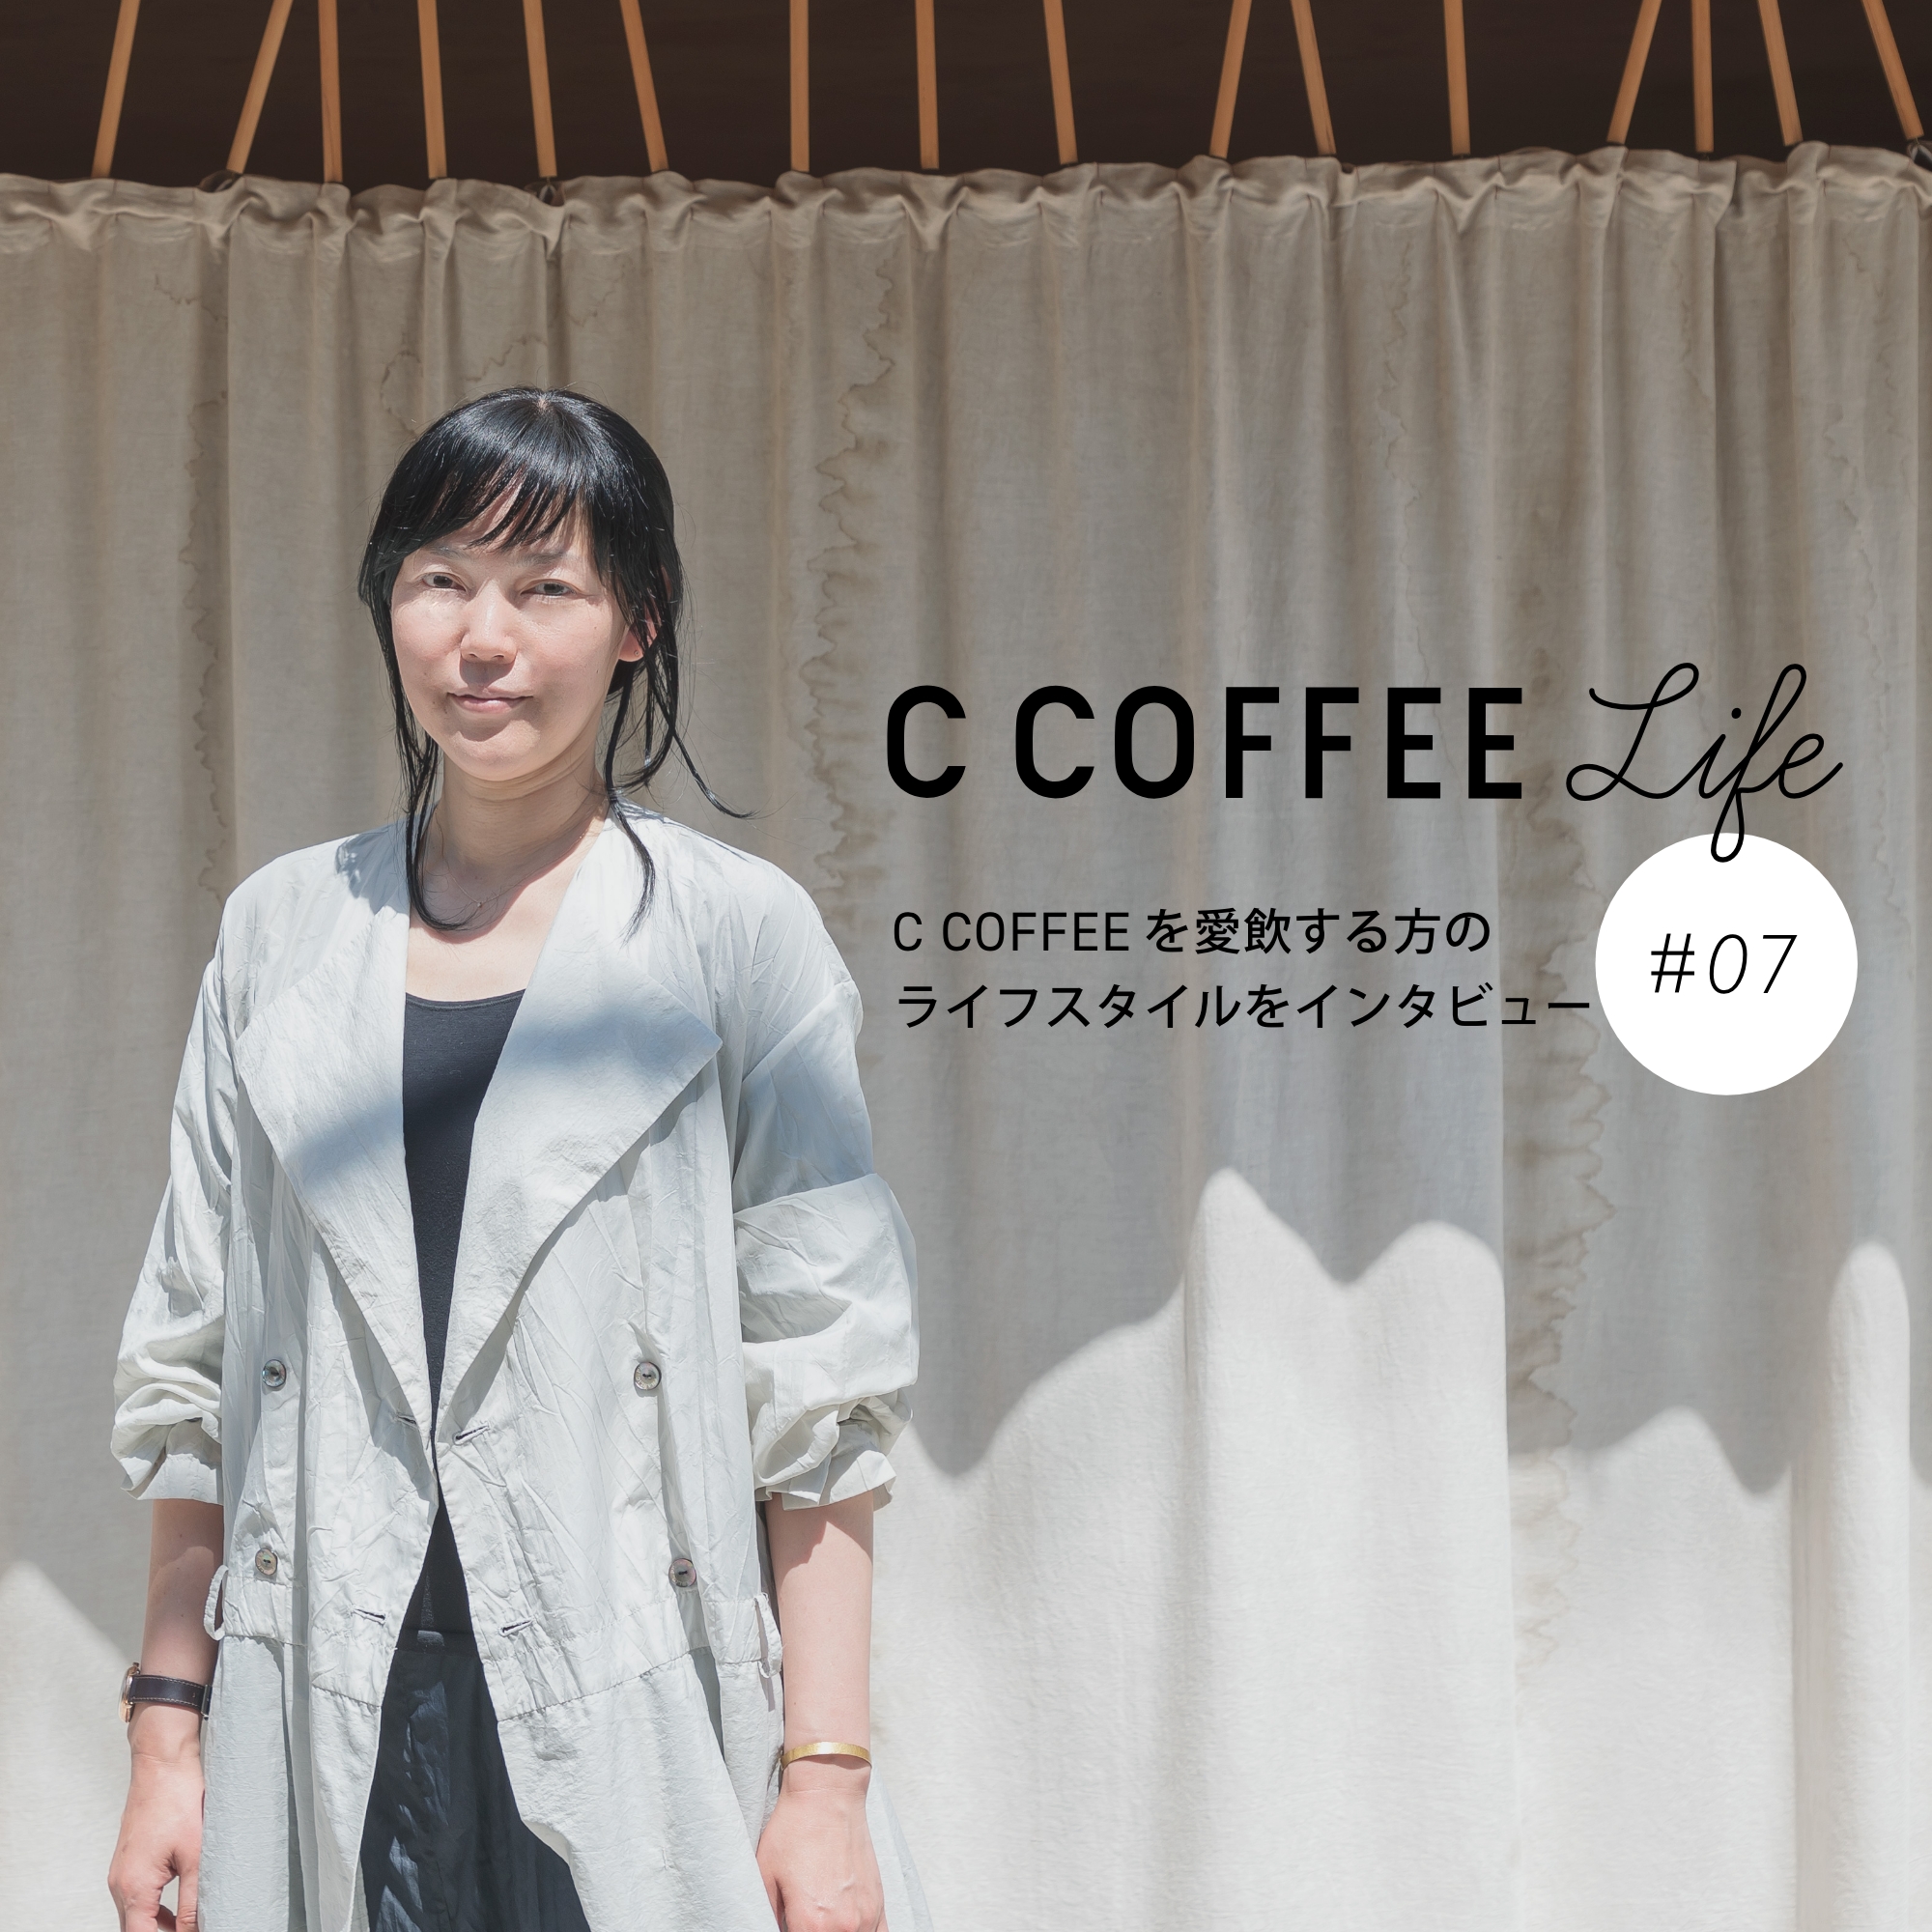 C COFFEE Life  #07  フレグランスコーディネーター/セラピスト　山野辺喜子さん